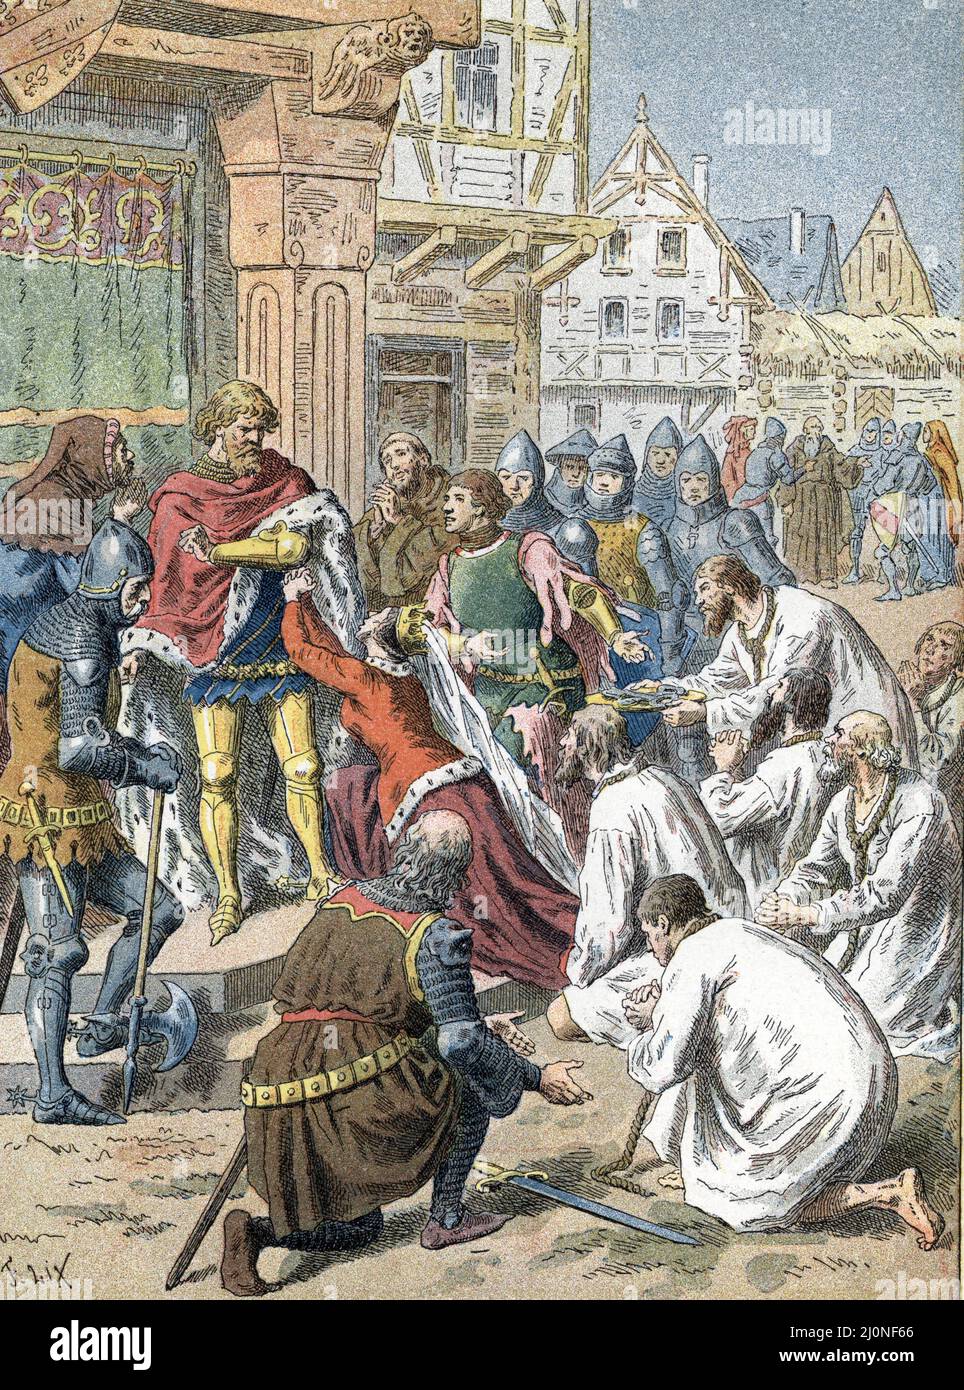 Guerre de cent ans, 1347 : Les Bourgeois de Calais Conduits par Eustache de Saint-Pierre, s’offrent en otages a Edouard III (1312-1377) roi d'Angleterre - ILS sont sauves Grace a l’intervention de Philippa de Hainault (Assedio di Calais da Edoardo III in 1346 - 1347- la regina Philippa de Hainaut implorò il suo sposo per concedere al borghese di Calais - Burghers di Calais erano sei dei cittadini più importanti di Calais con corde circa il loro collo è venuto prima del re Edoardo III e gli ha consegnato il Chiavi della loro città) gravure tiree de 'la France a travers les siecles' de Witt 1897 Collection privee Foto Stock